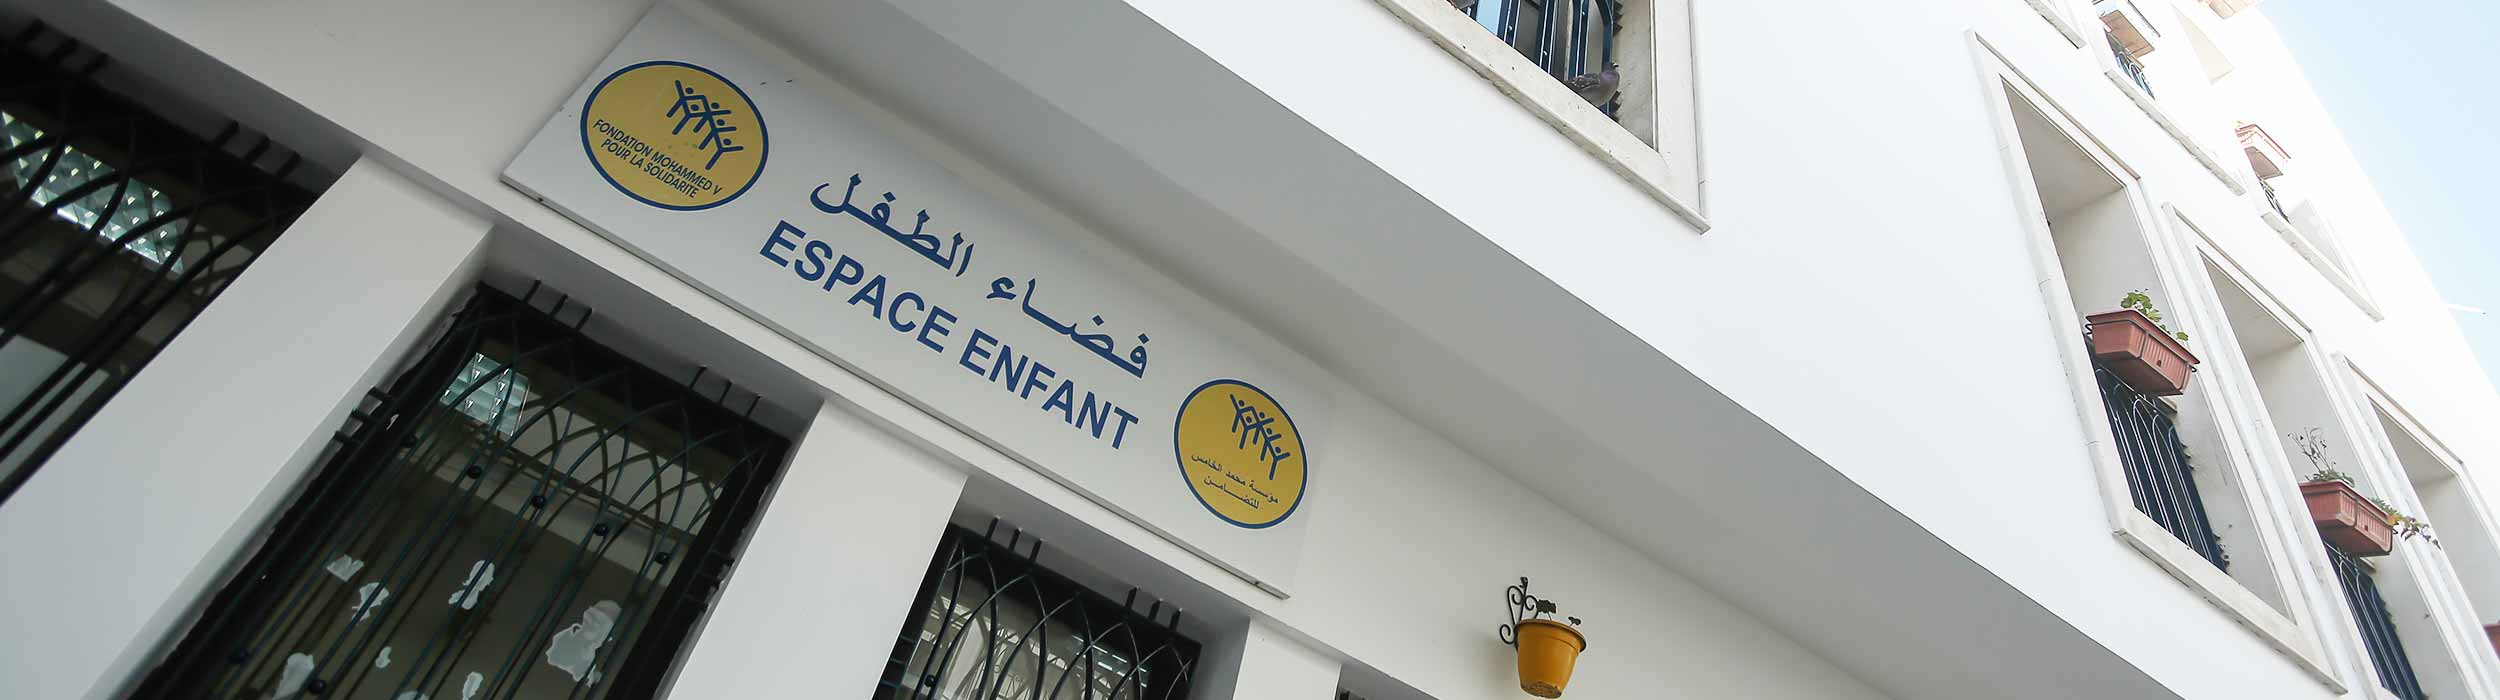 Crèche Centre ESPOD – Casablanca